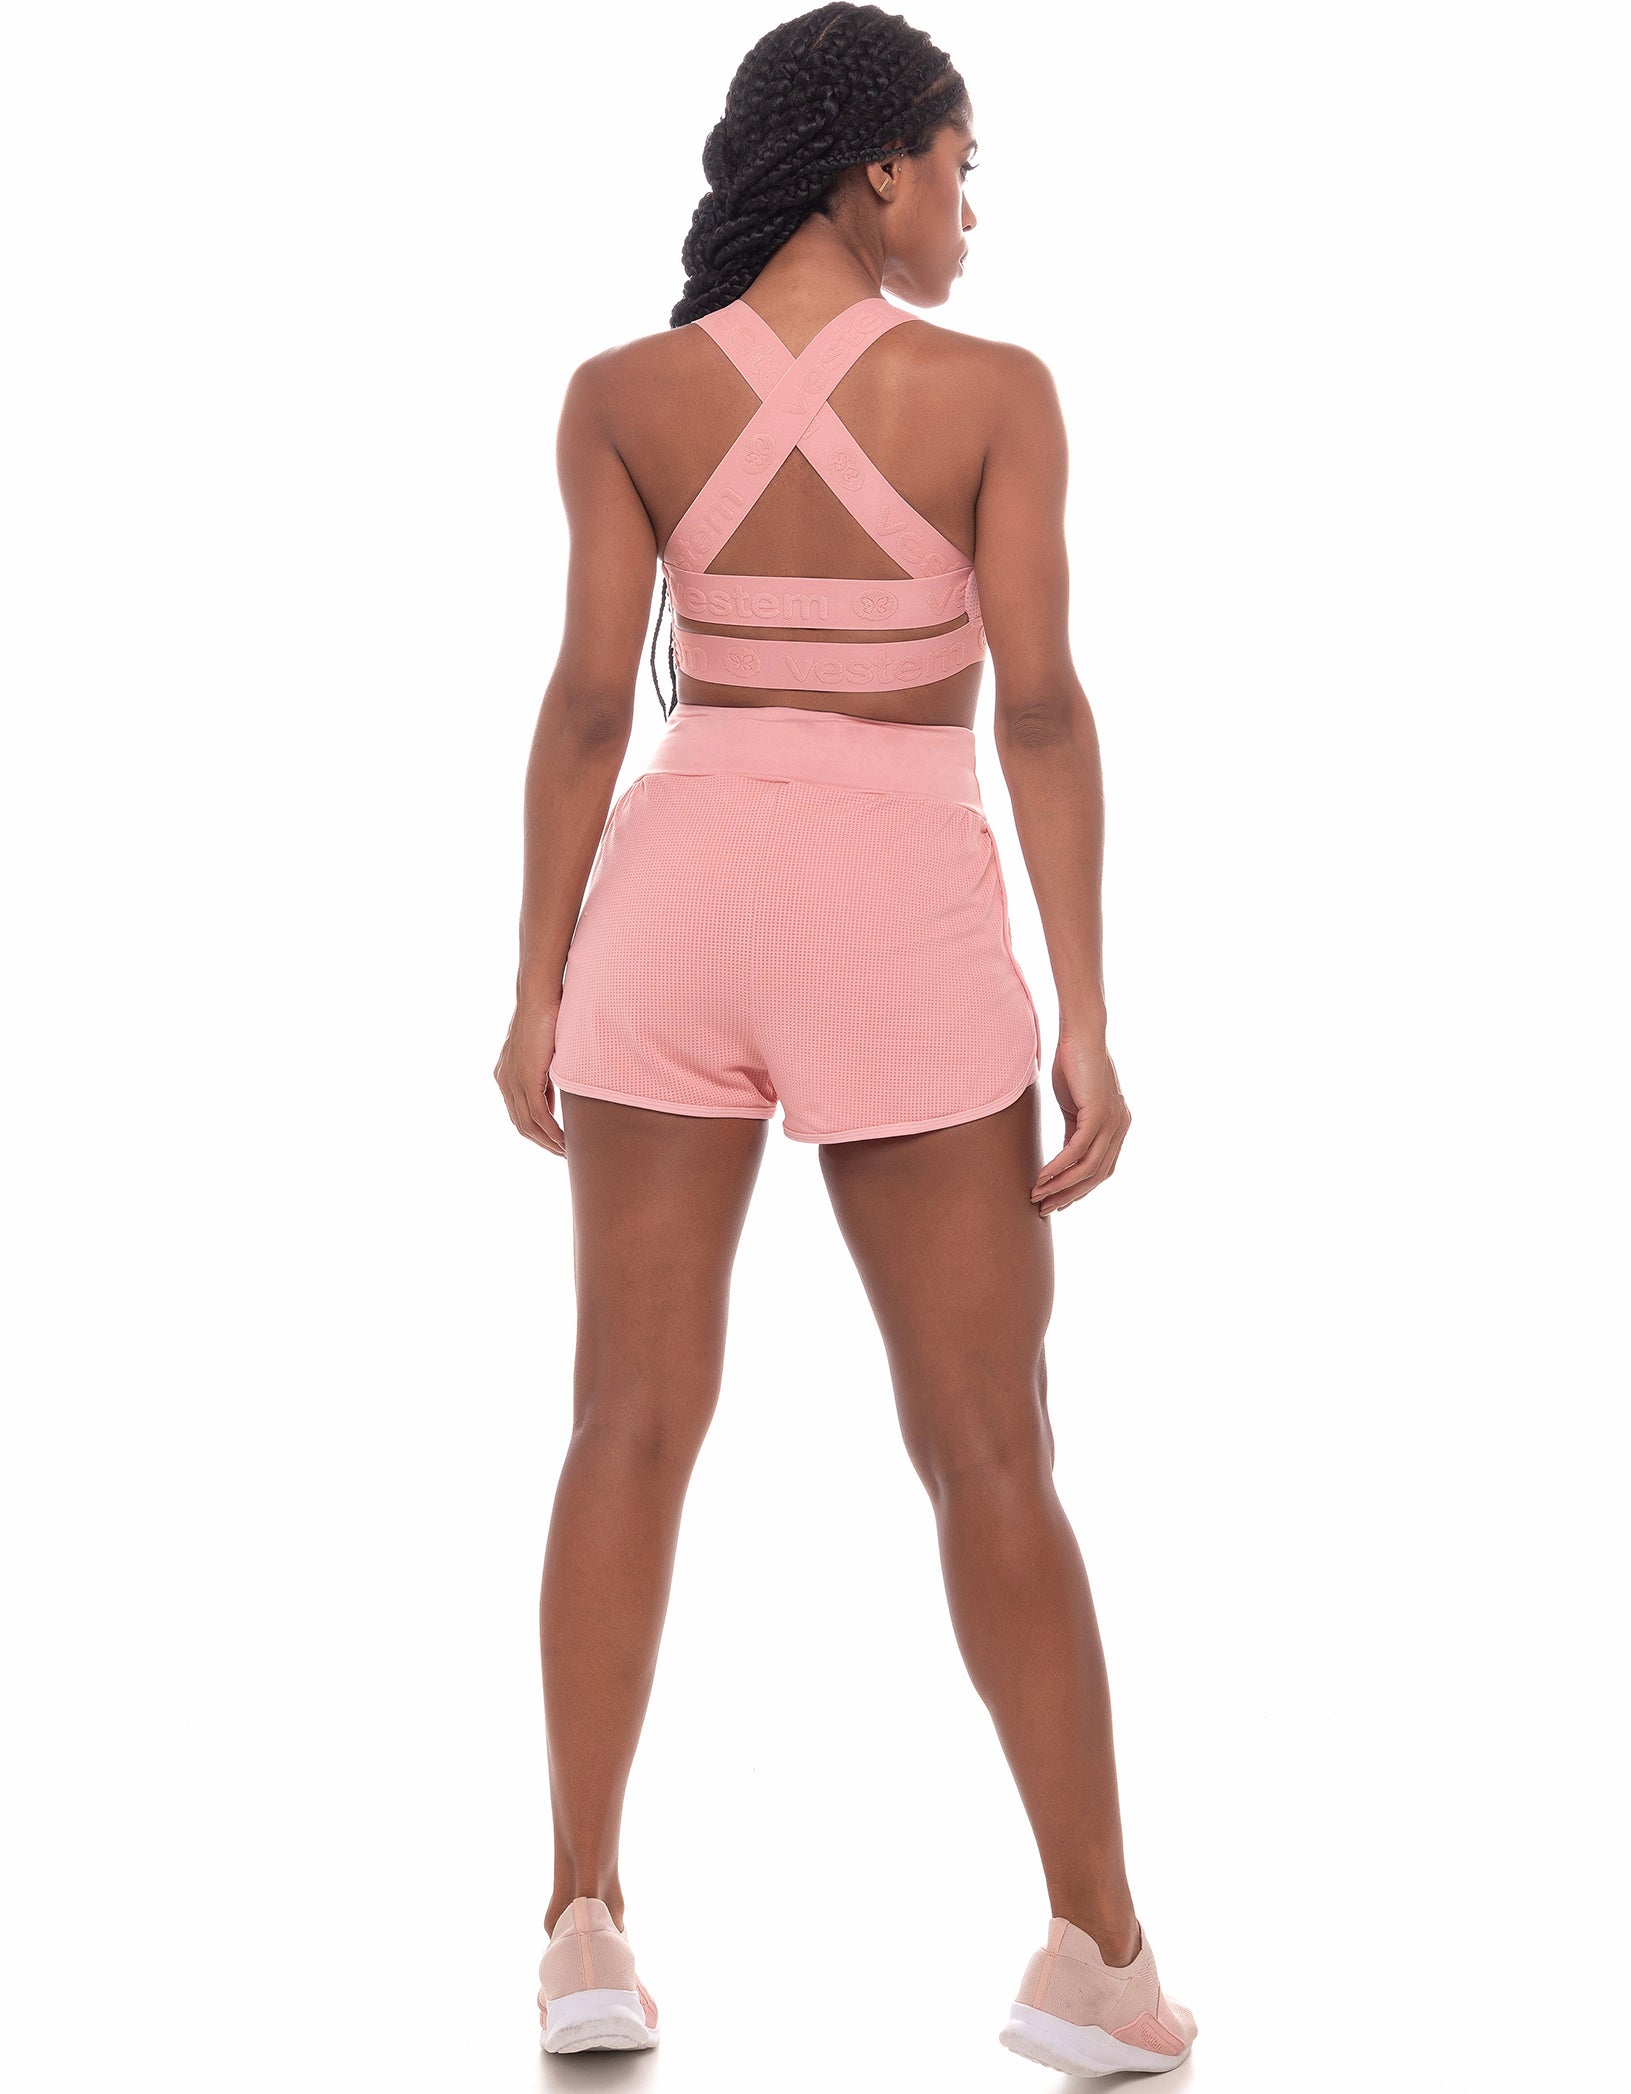 Vestem - Leblon Pink Romance Shorts - SH452C0243